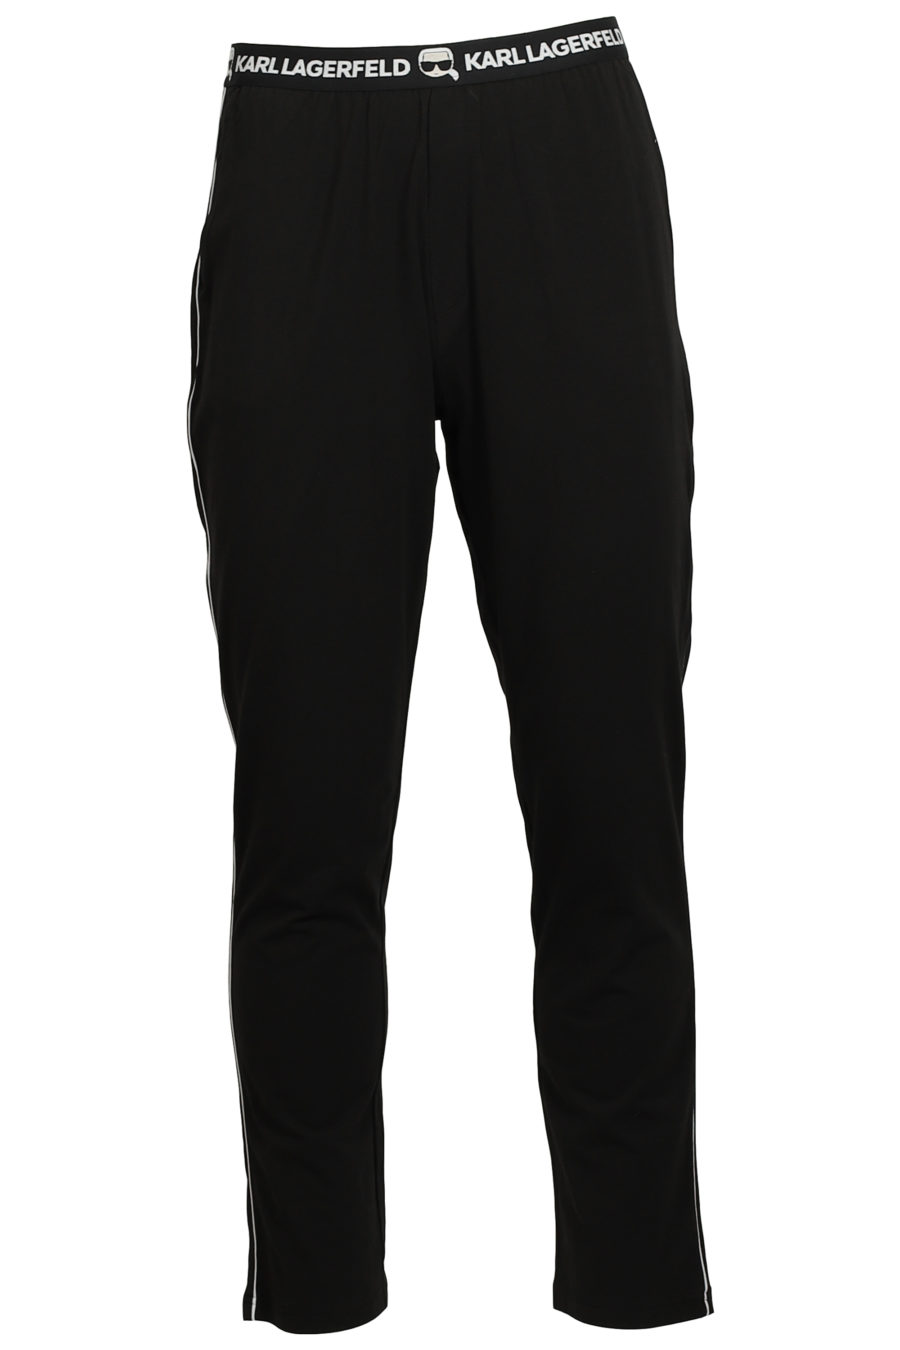 Set de pijama negro y blanco con logo en goma - IMG 3738